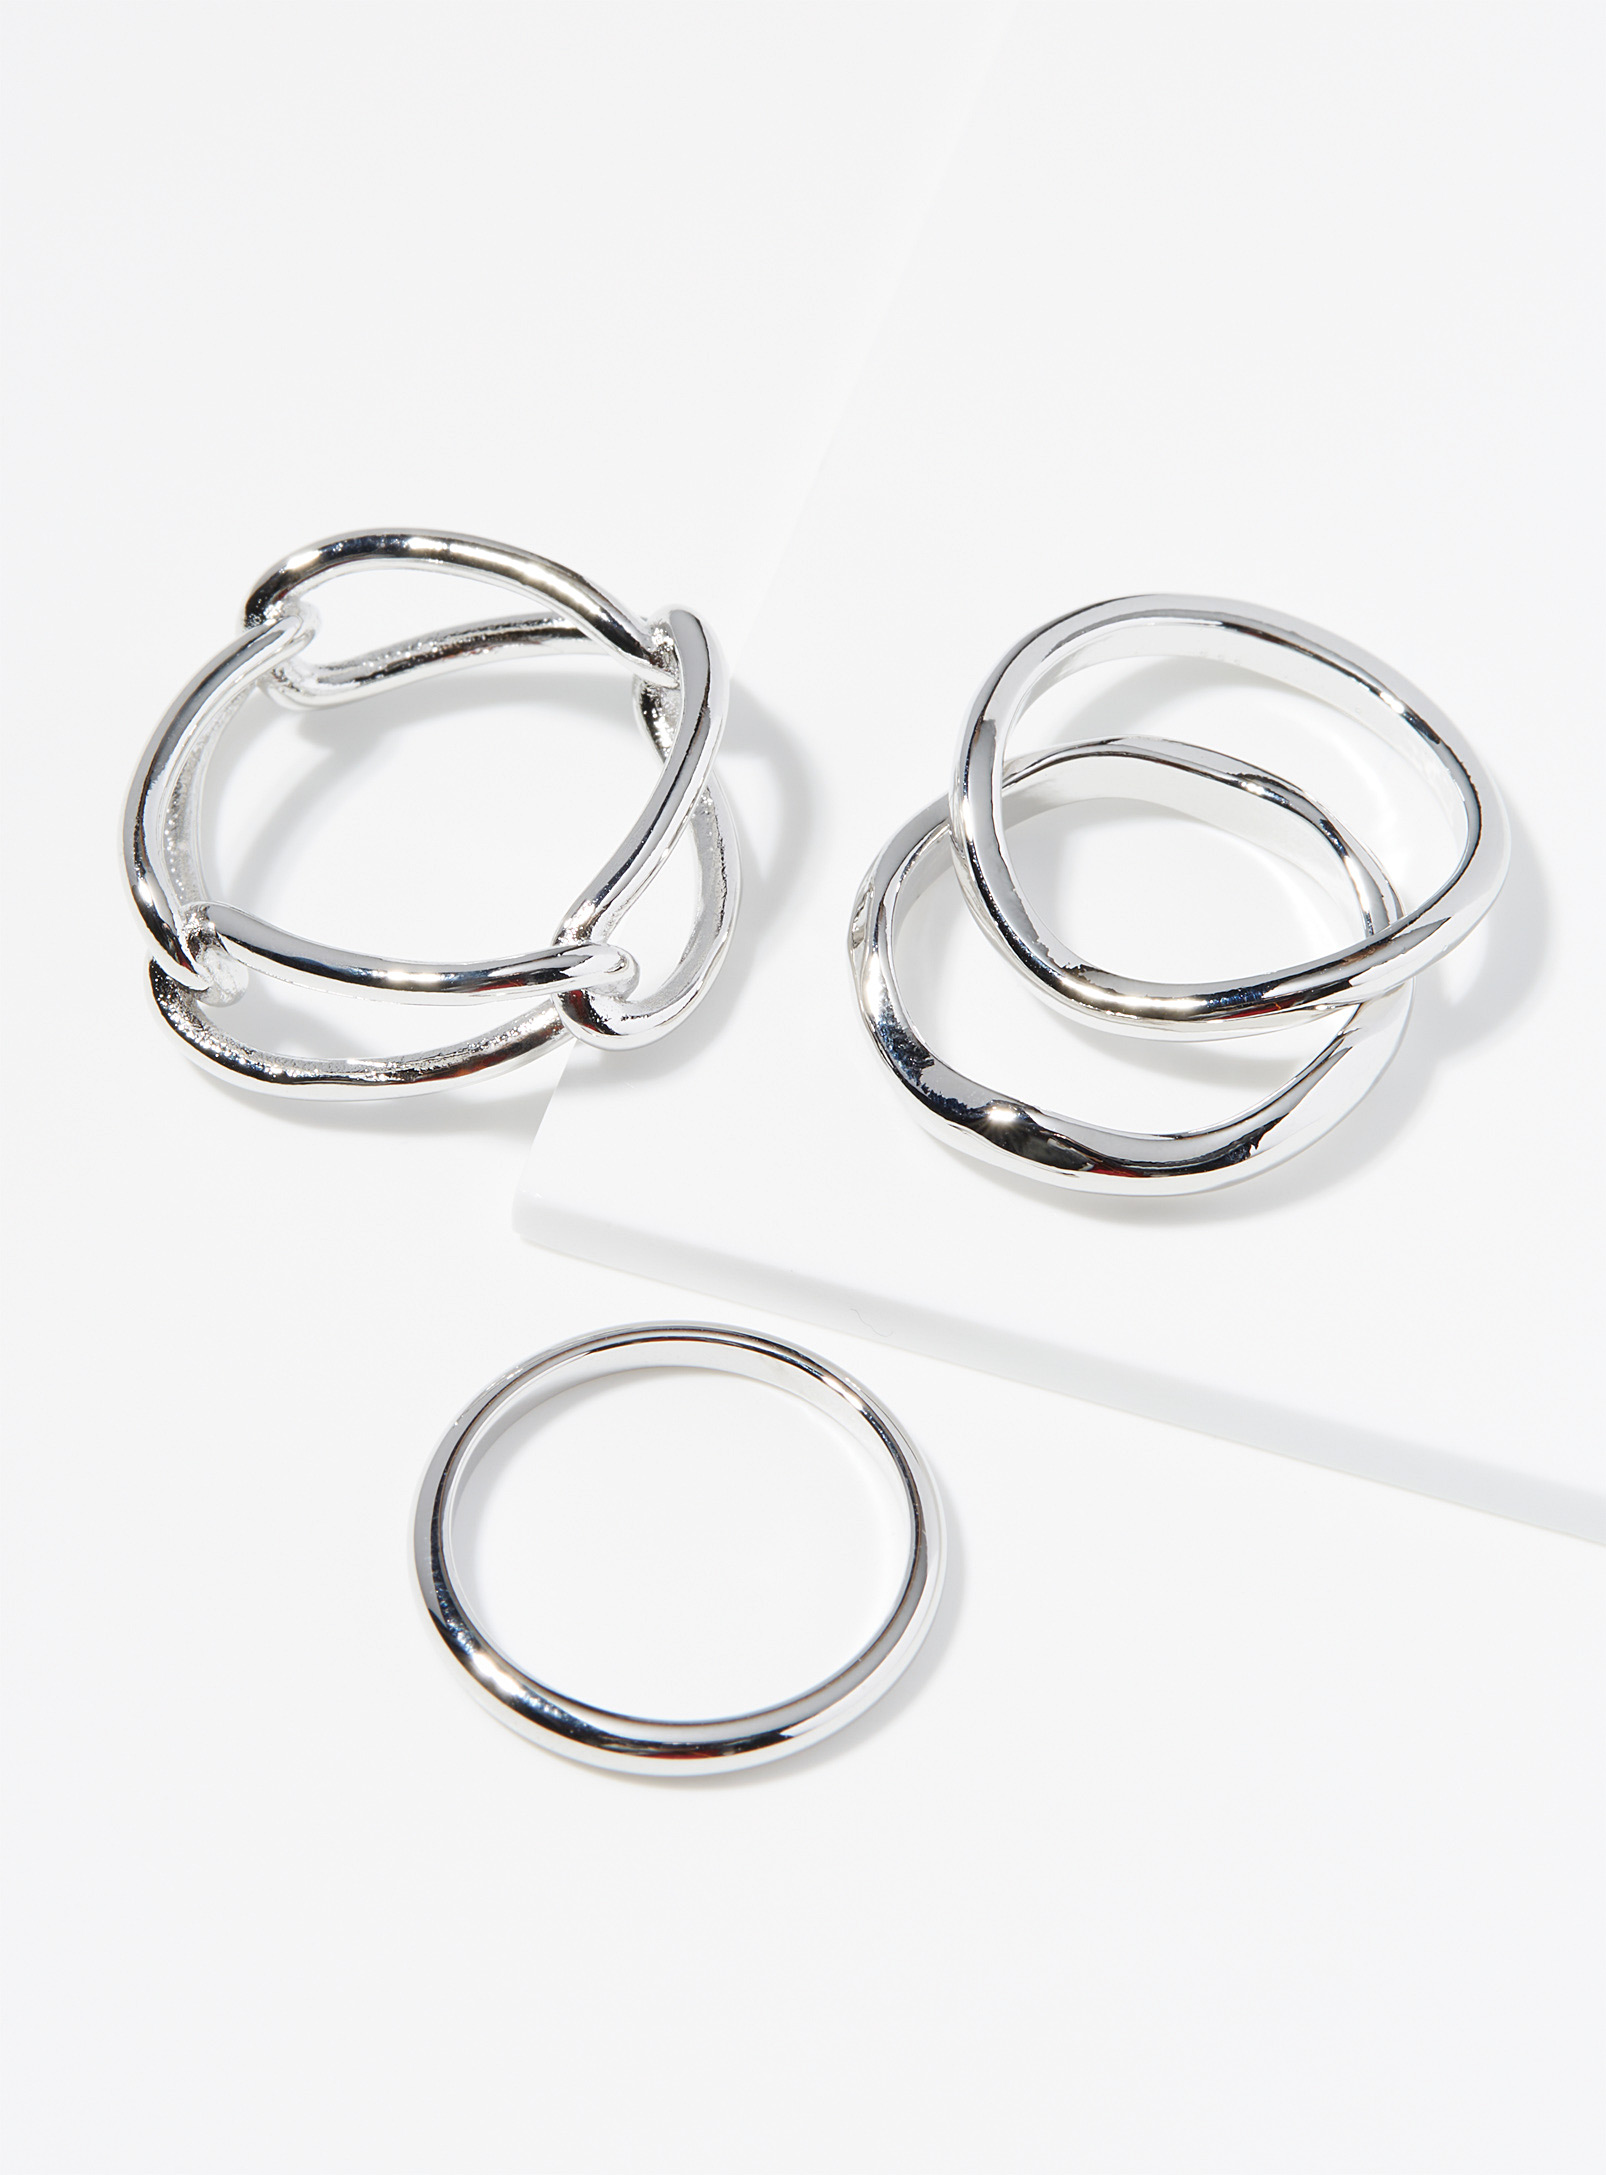 Simons - Women's Irregular rings Set of 4